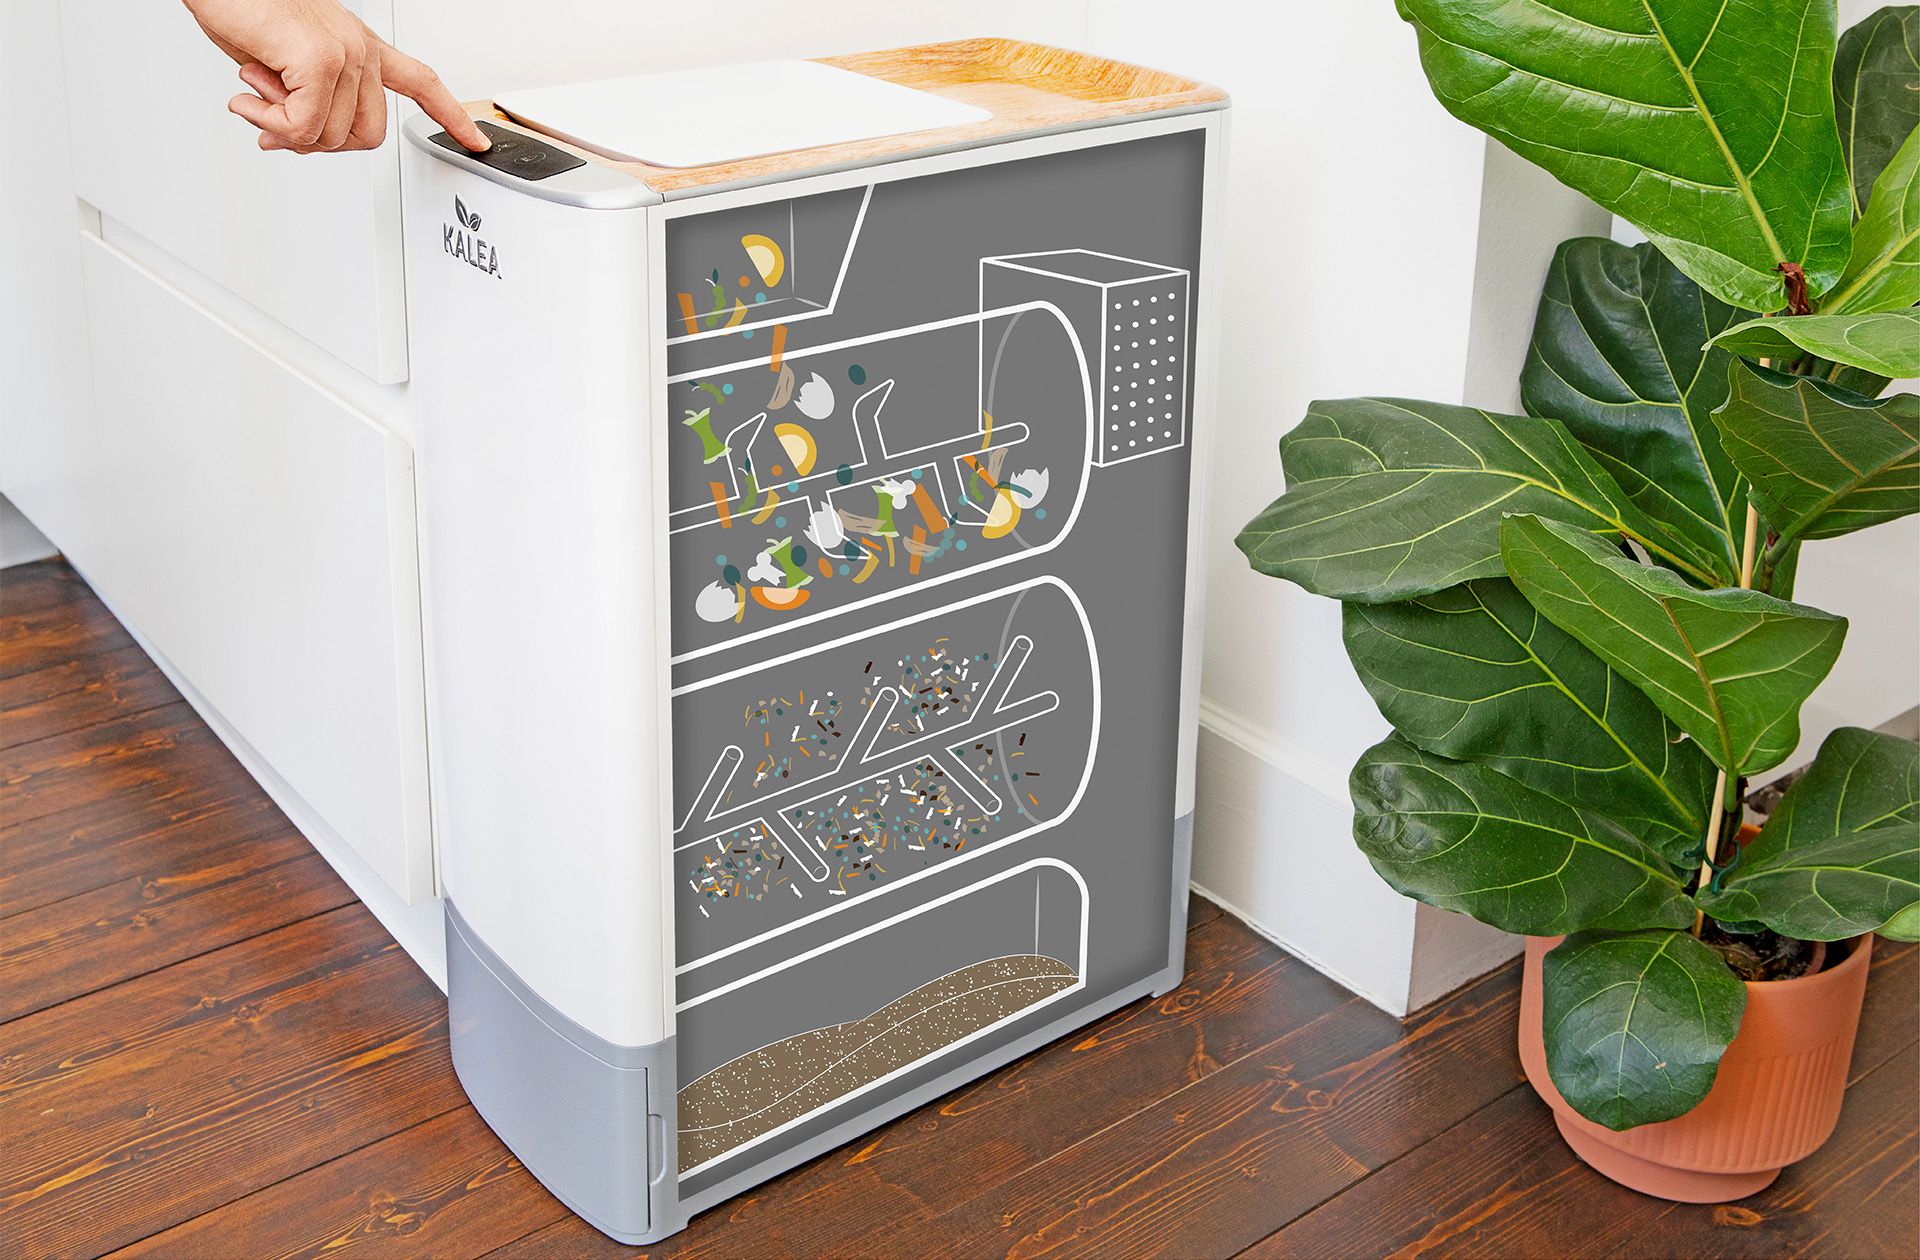 Kalea, un appareil de cuisine intelligent, transforme les déchets organiques en compost en seulement 48 heures. Riche en nutriments pour les plantes, c'est ainsi une solution durable pour l'élimination des déchets de cuisine dans les foyers urbains.